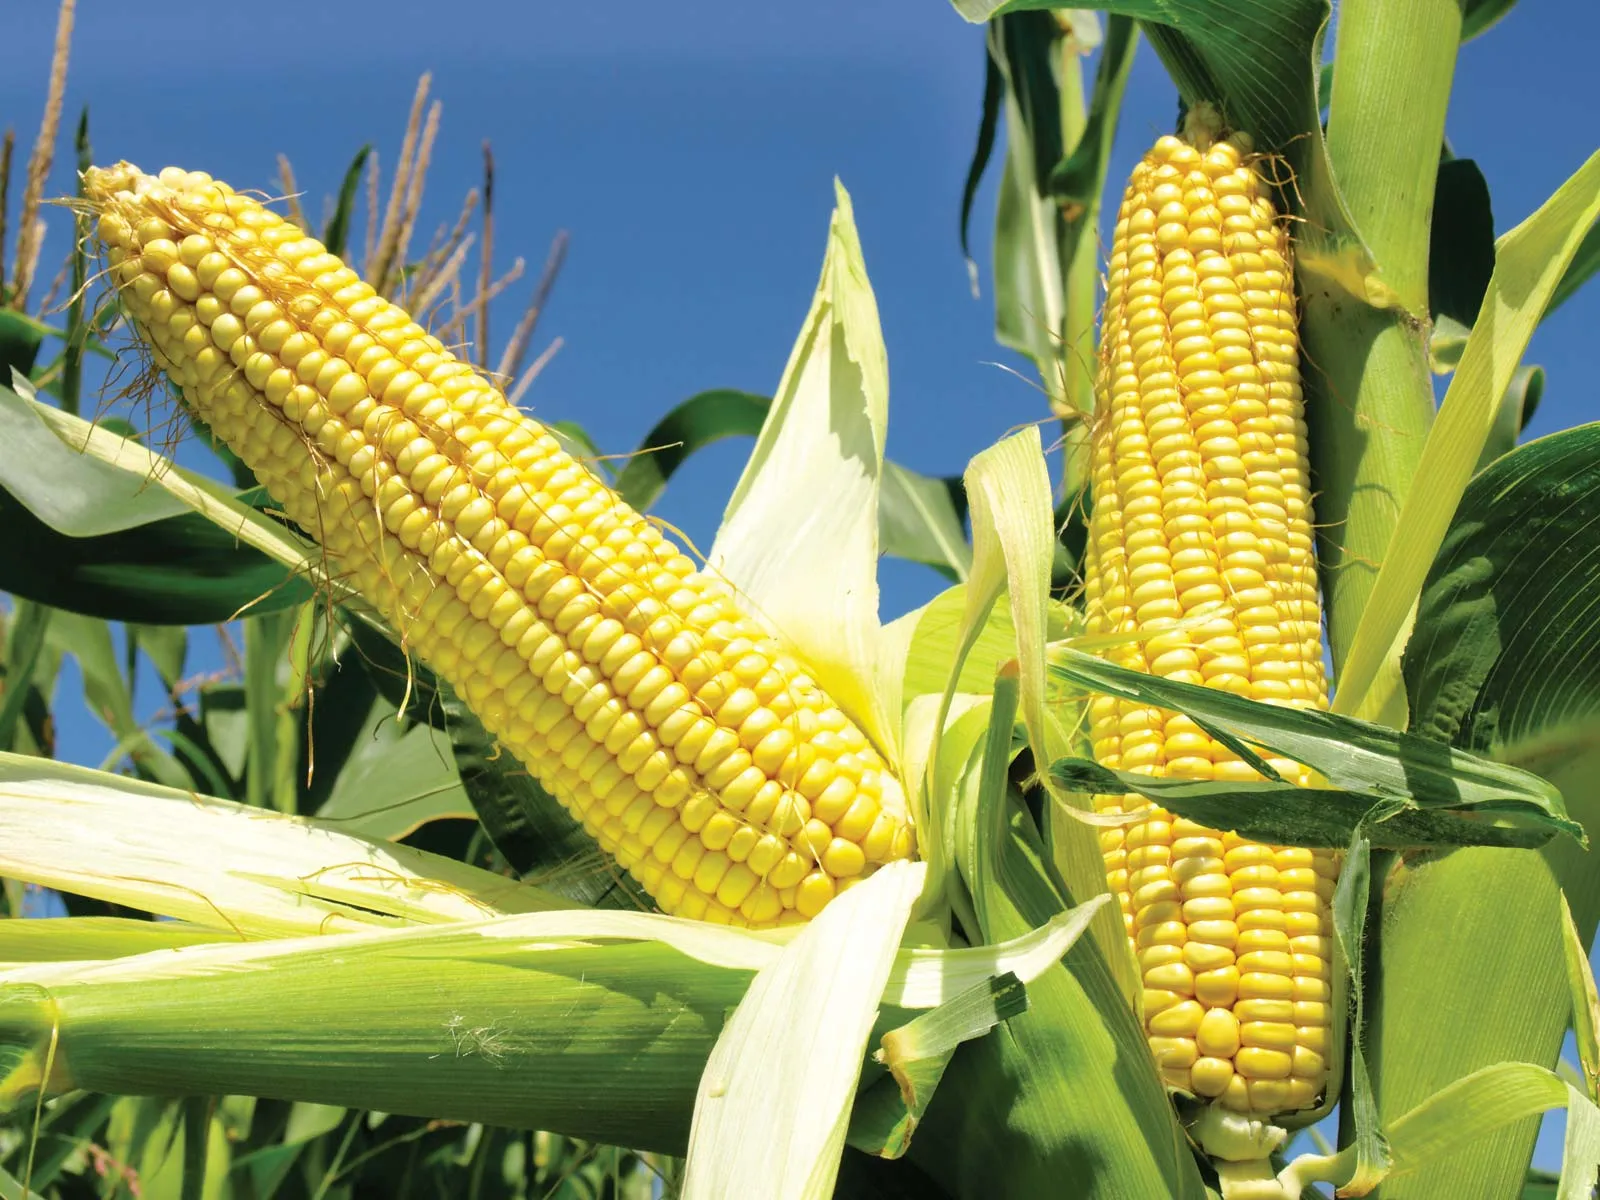 "المنوفي الزراعية" تعتزم زراعة 200 فدان من البرسيم الحجازي والذرة والقمح في الوادي